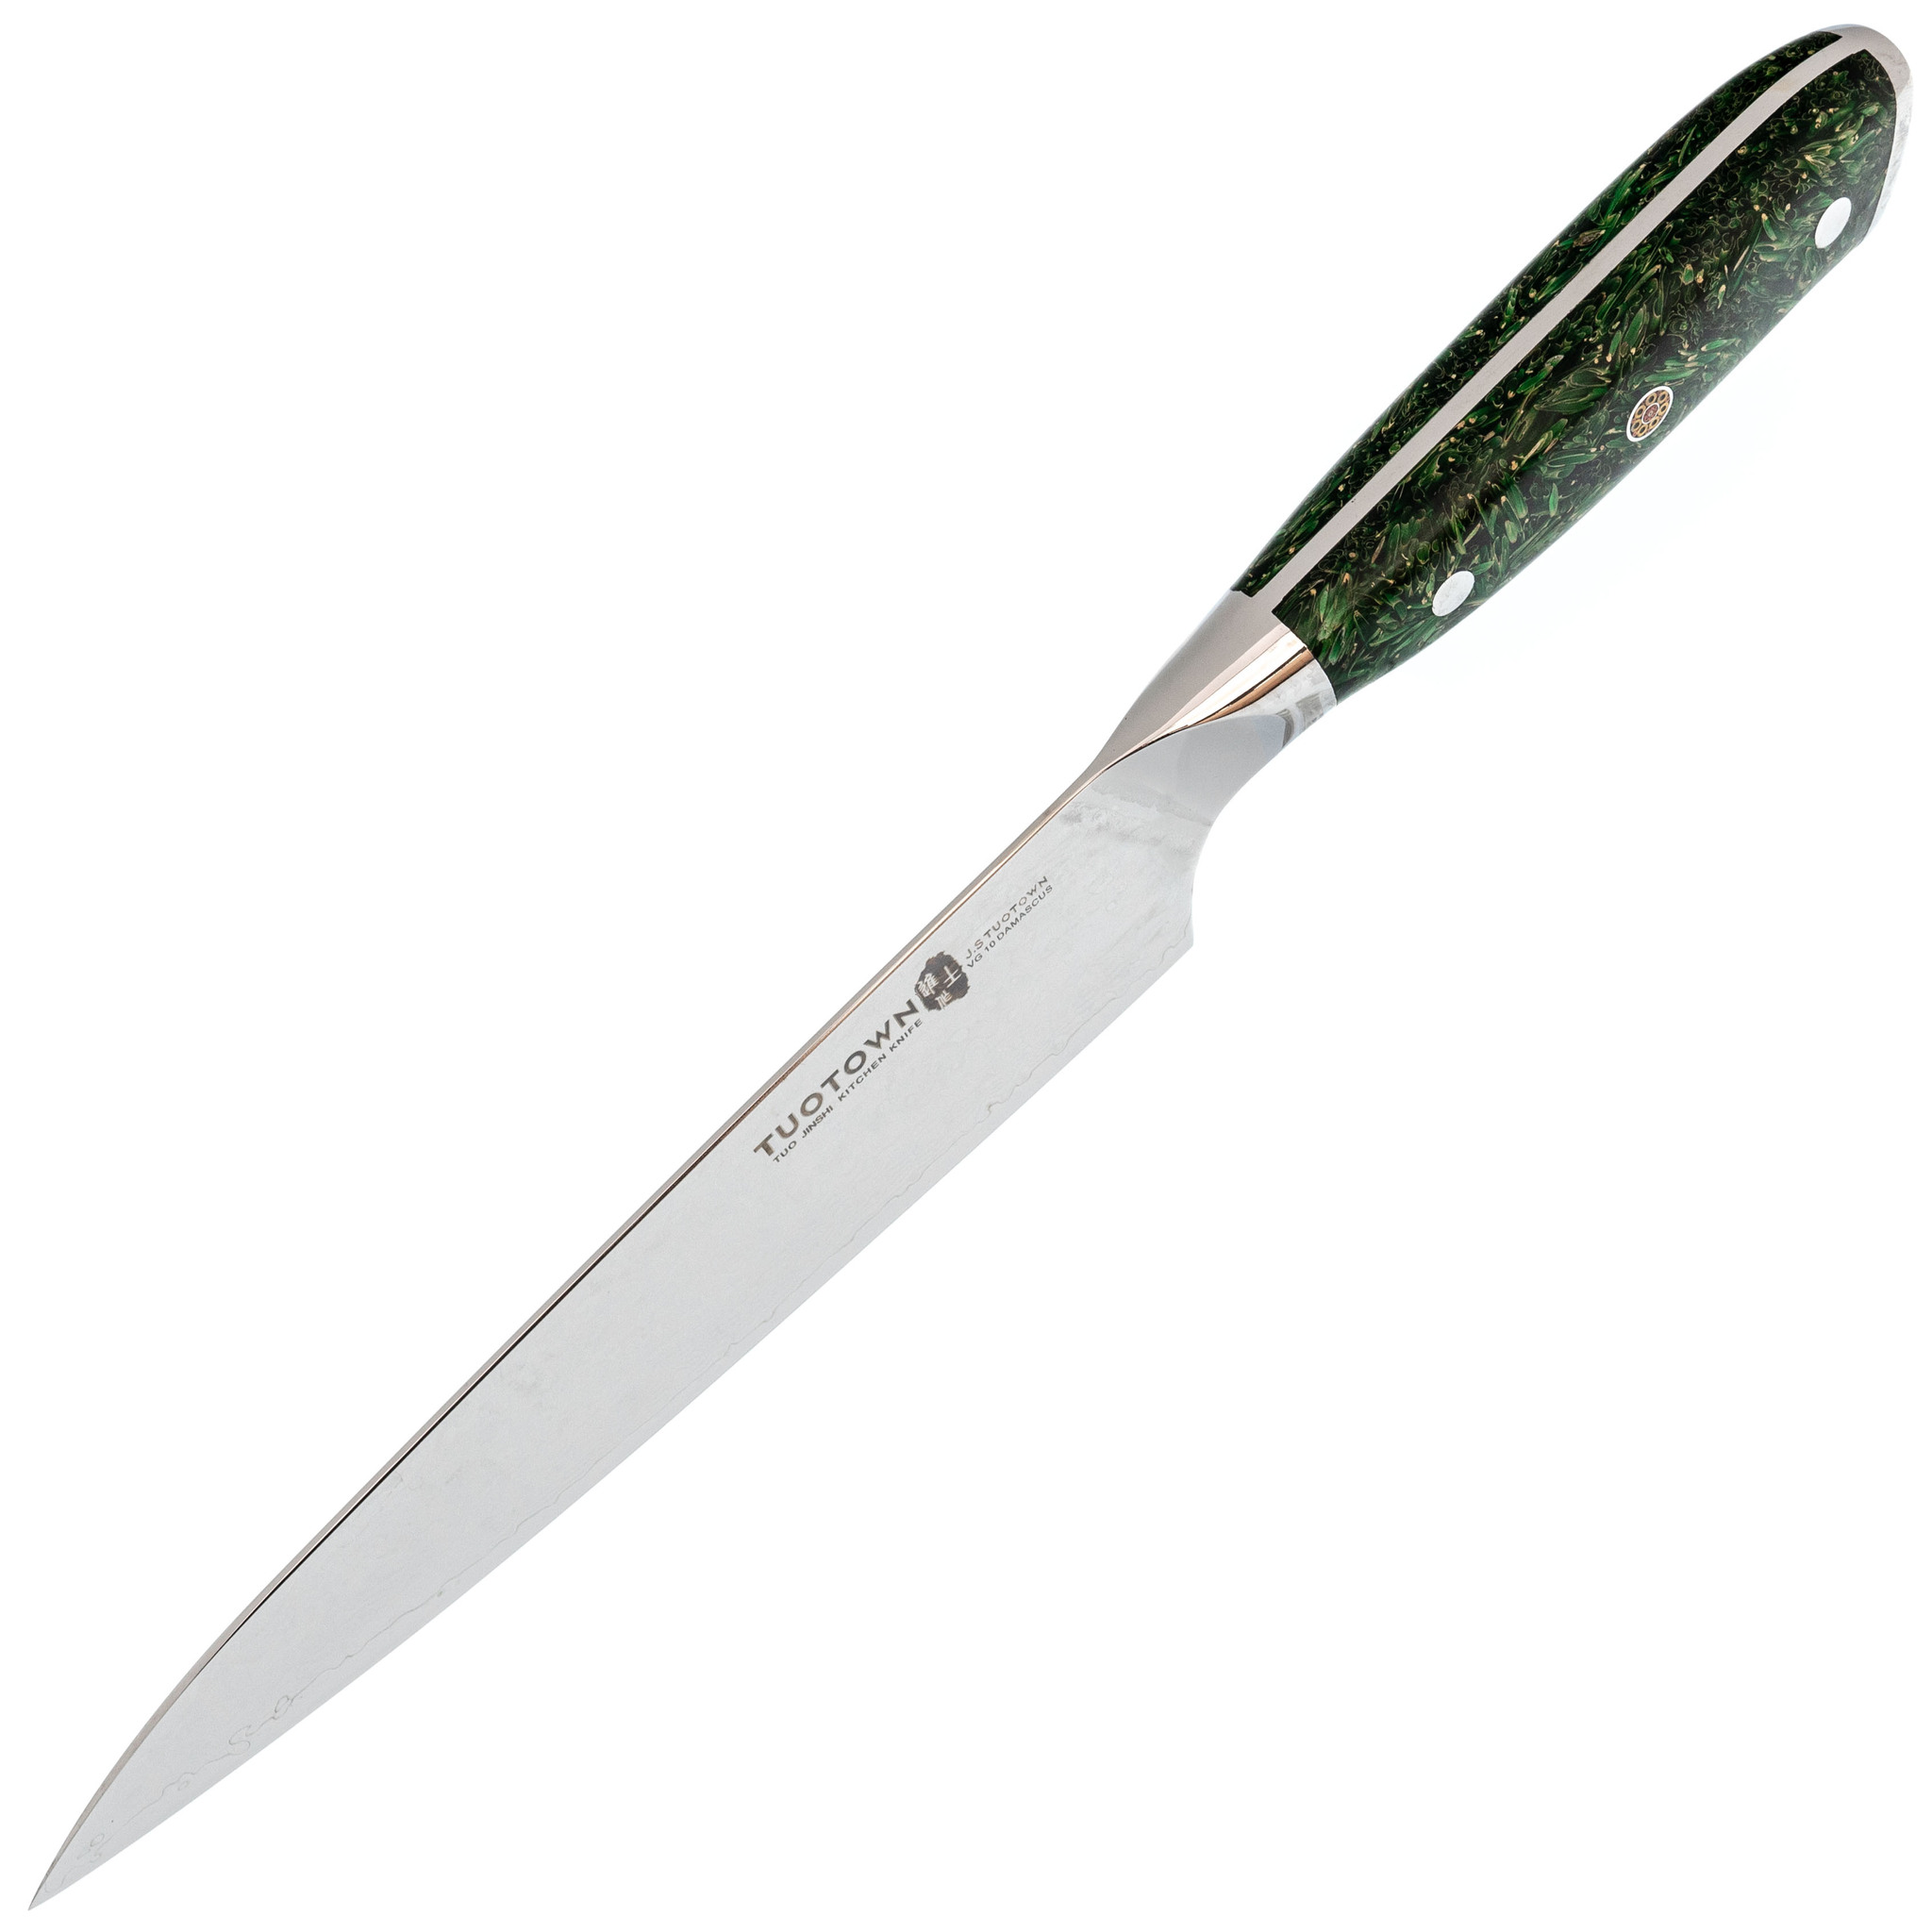 Кухонный нож Шеф Tuotown, сталь VG10, обкладка Damascus, рукоять акрил, зеленый - фото 2